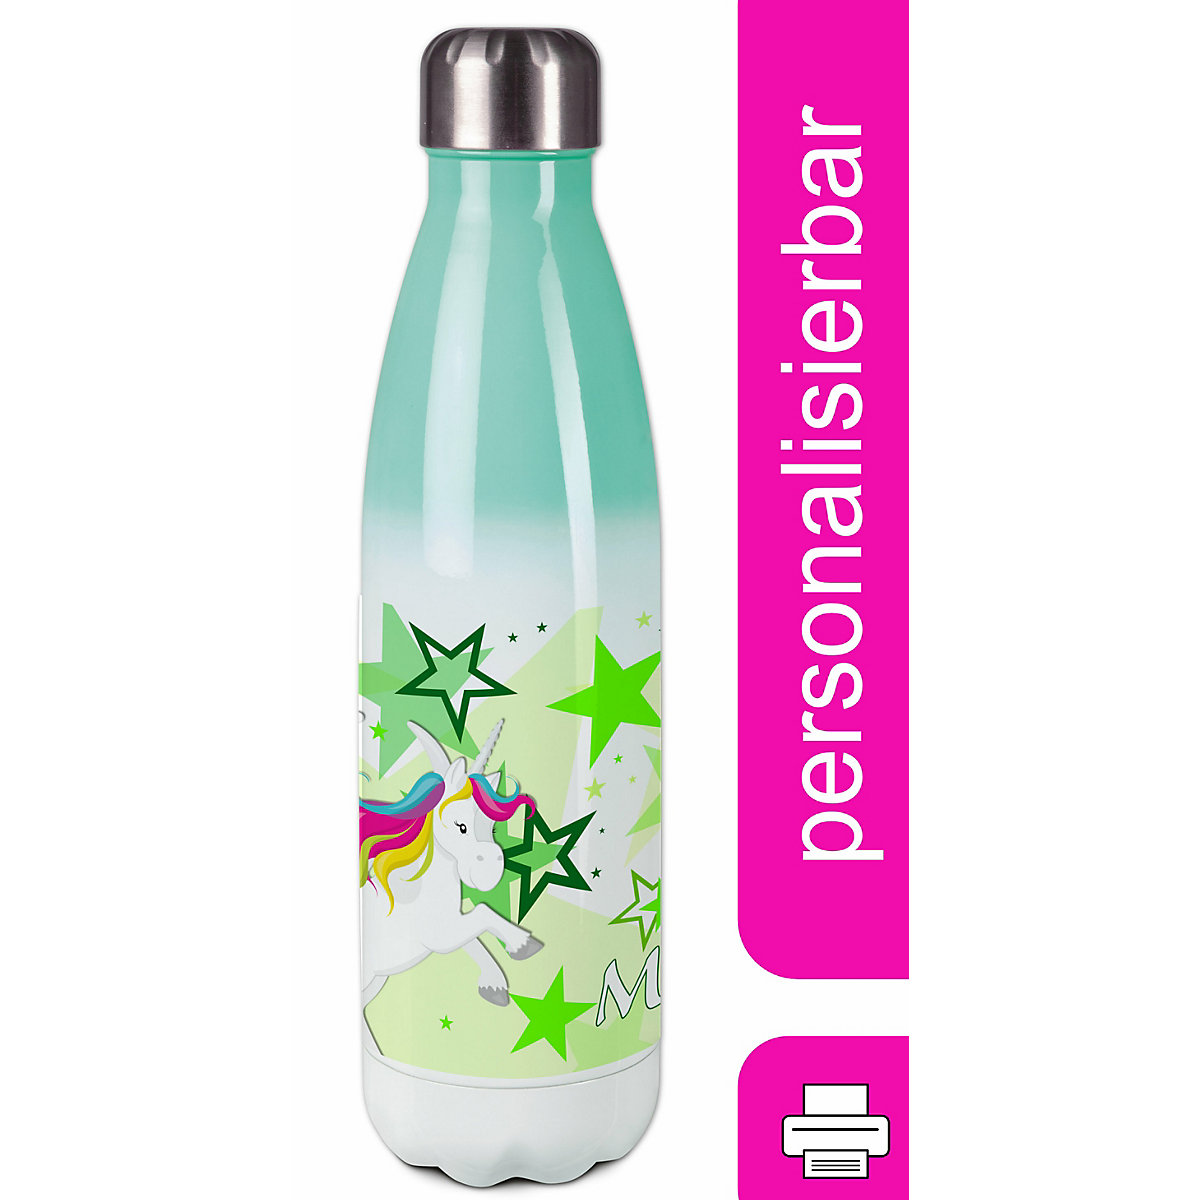 CreaDesign Edelstahl Kinder Thermoflasche / Trinkflasche bunt Pegasus Sterne Farbe grün Spülmaschinenfest Auslaufsicher Bruchfest Doppelwandig Für Heißgetränke geeignet Mit Deckel Isoliert